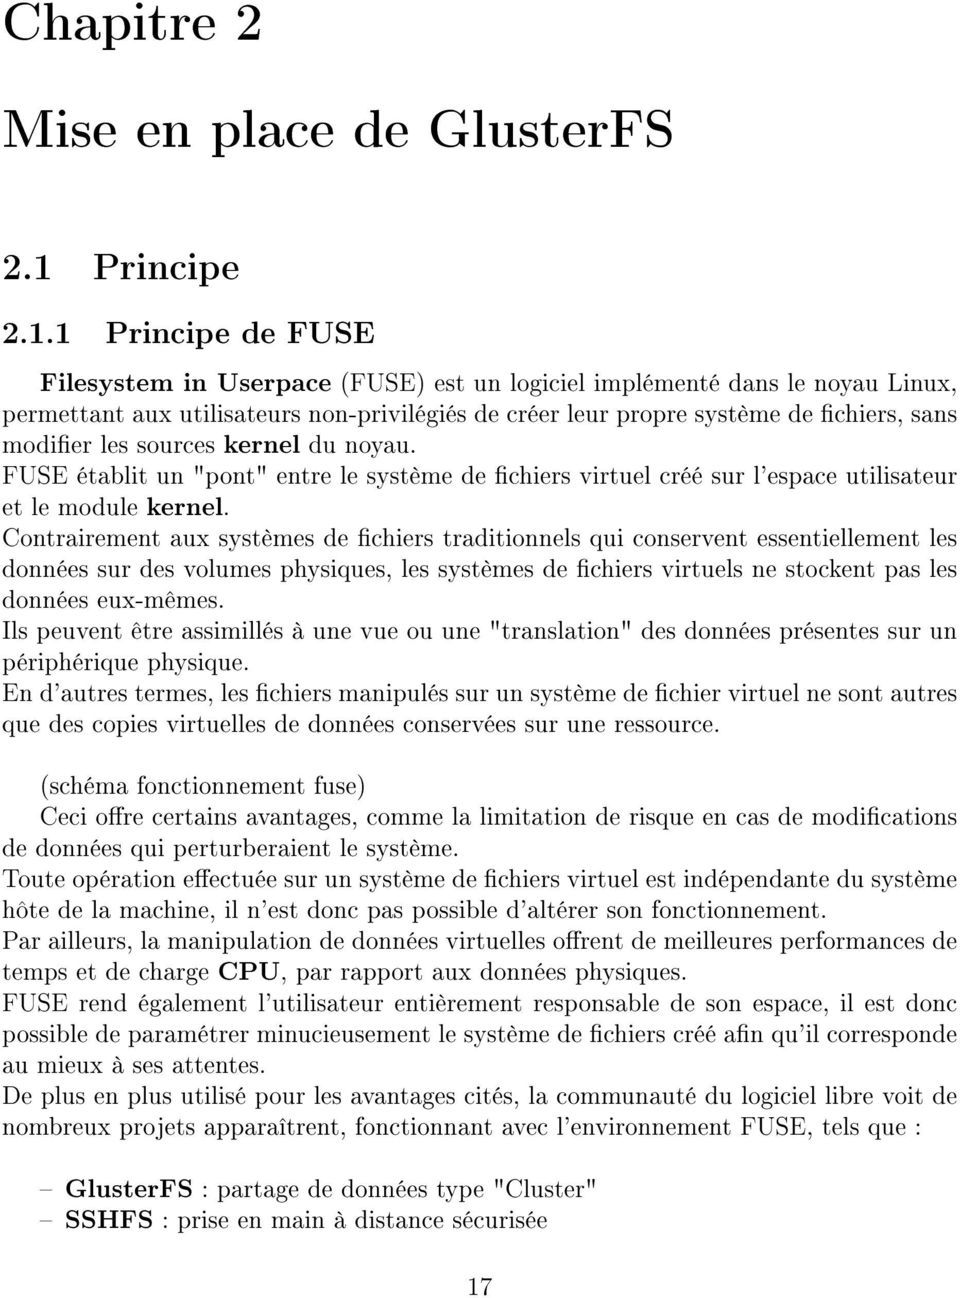 1 Principe de FUSE Filesystem in Userpace (FUSE) est un logiciel implémenté dans le noyau Linux, permettant aux utilisateurs non-privilégiés de créer leur propre système de chiers, sans modier les